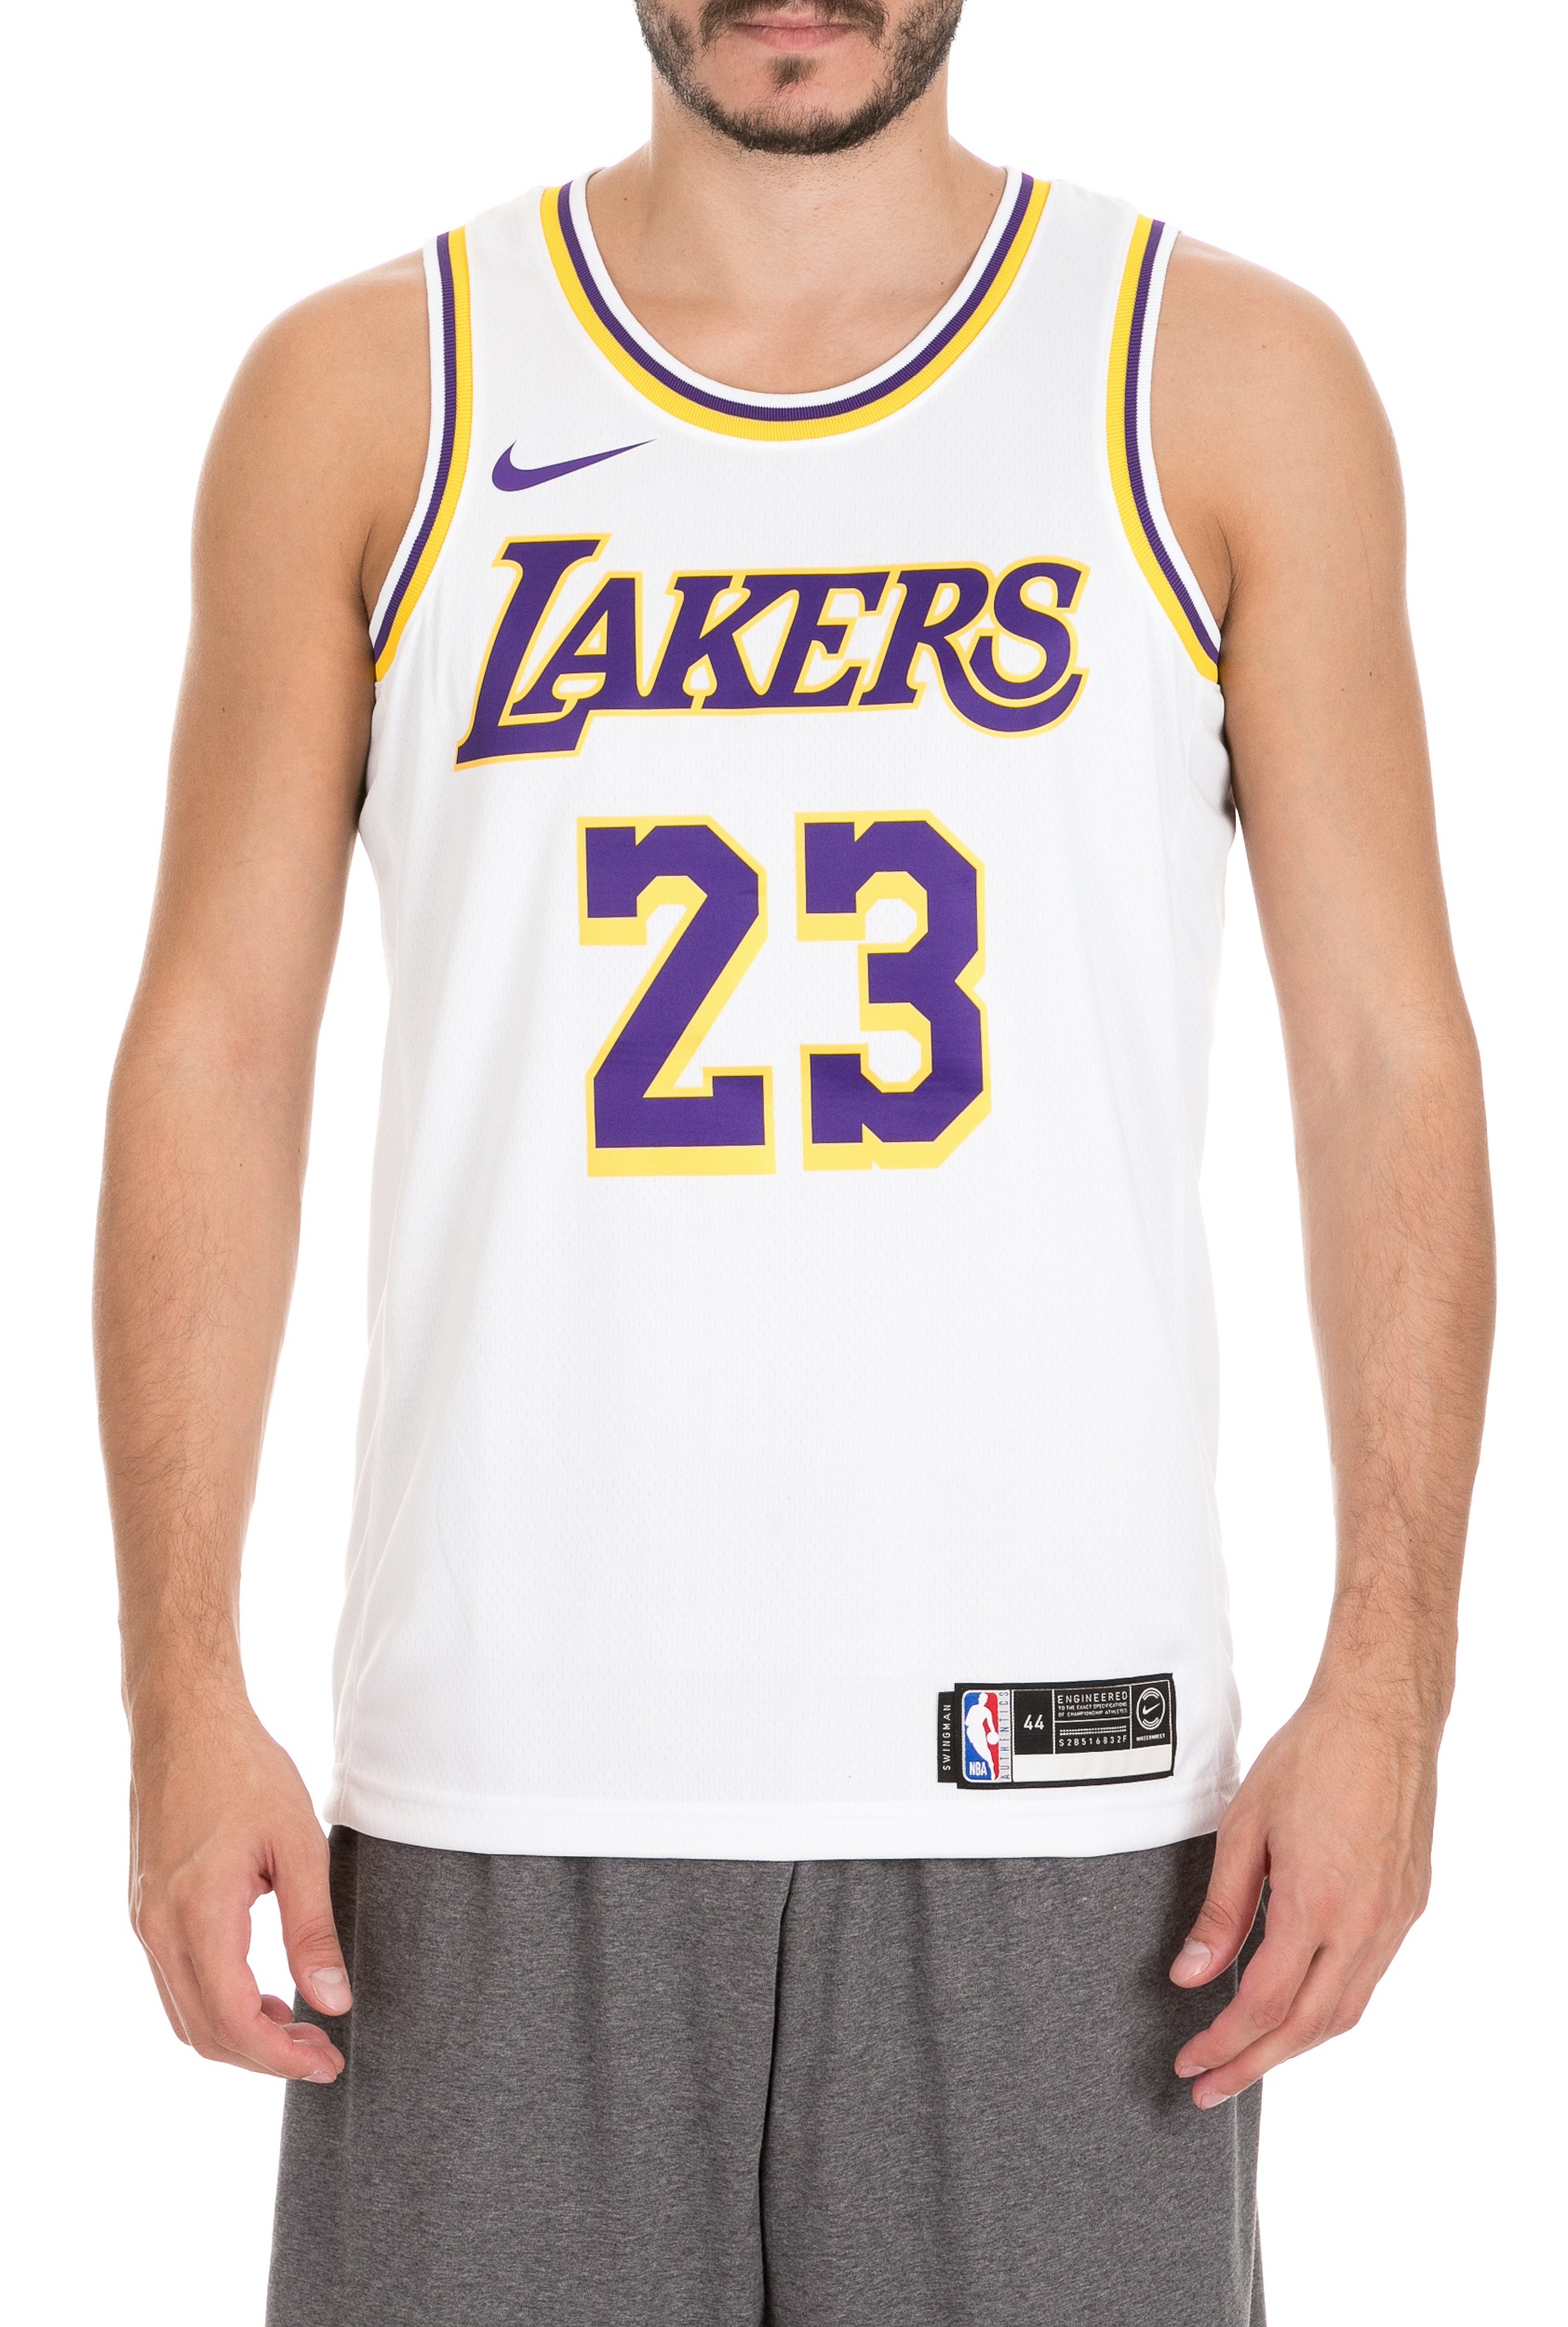 Ανδρικά/Ρούχα/Αθλητικά/T-shirt NIKE - Ανδρική φανέλα Nike Los Angeles Lakers λευκή